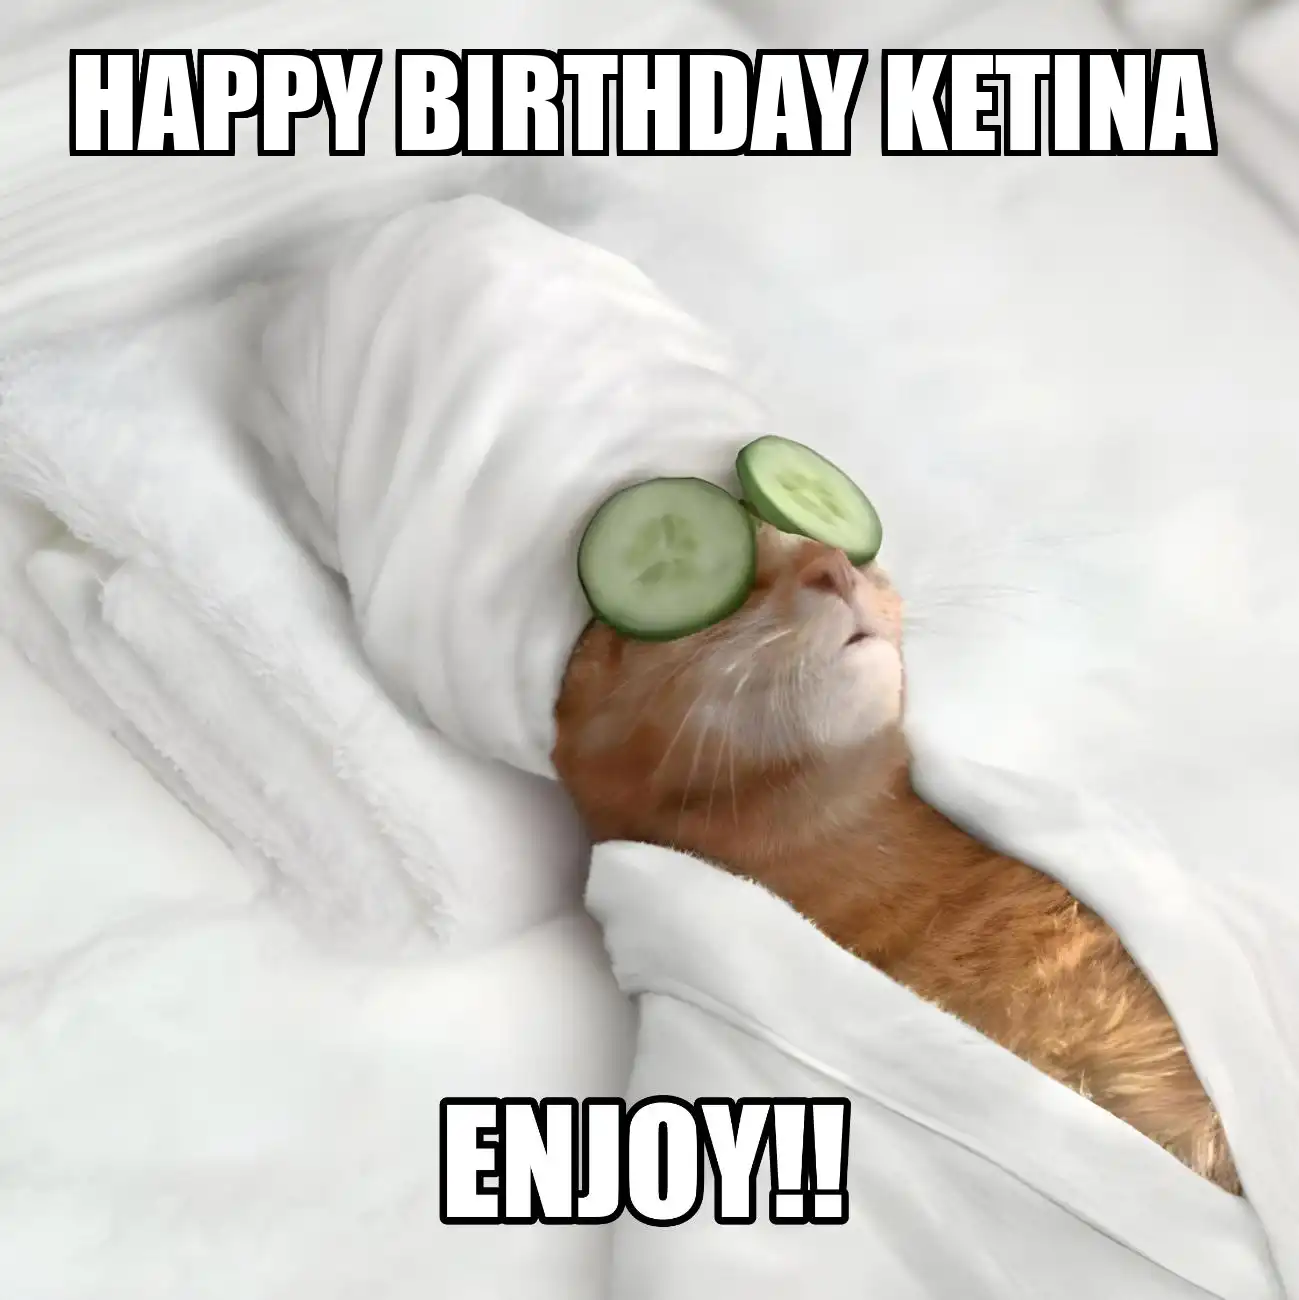 Happy Birthday Ketina Enjoy Cat Meme